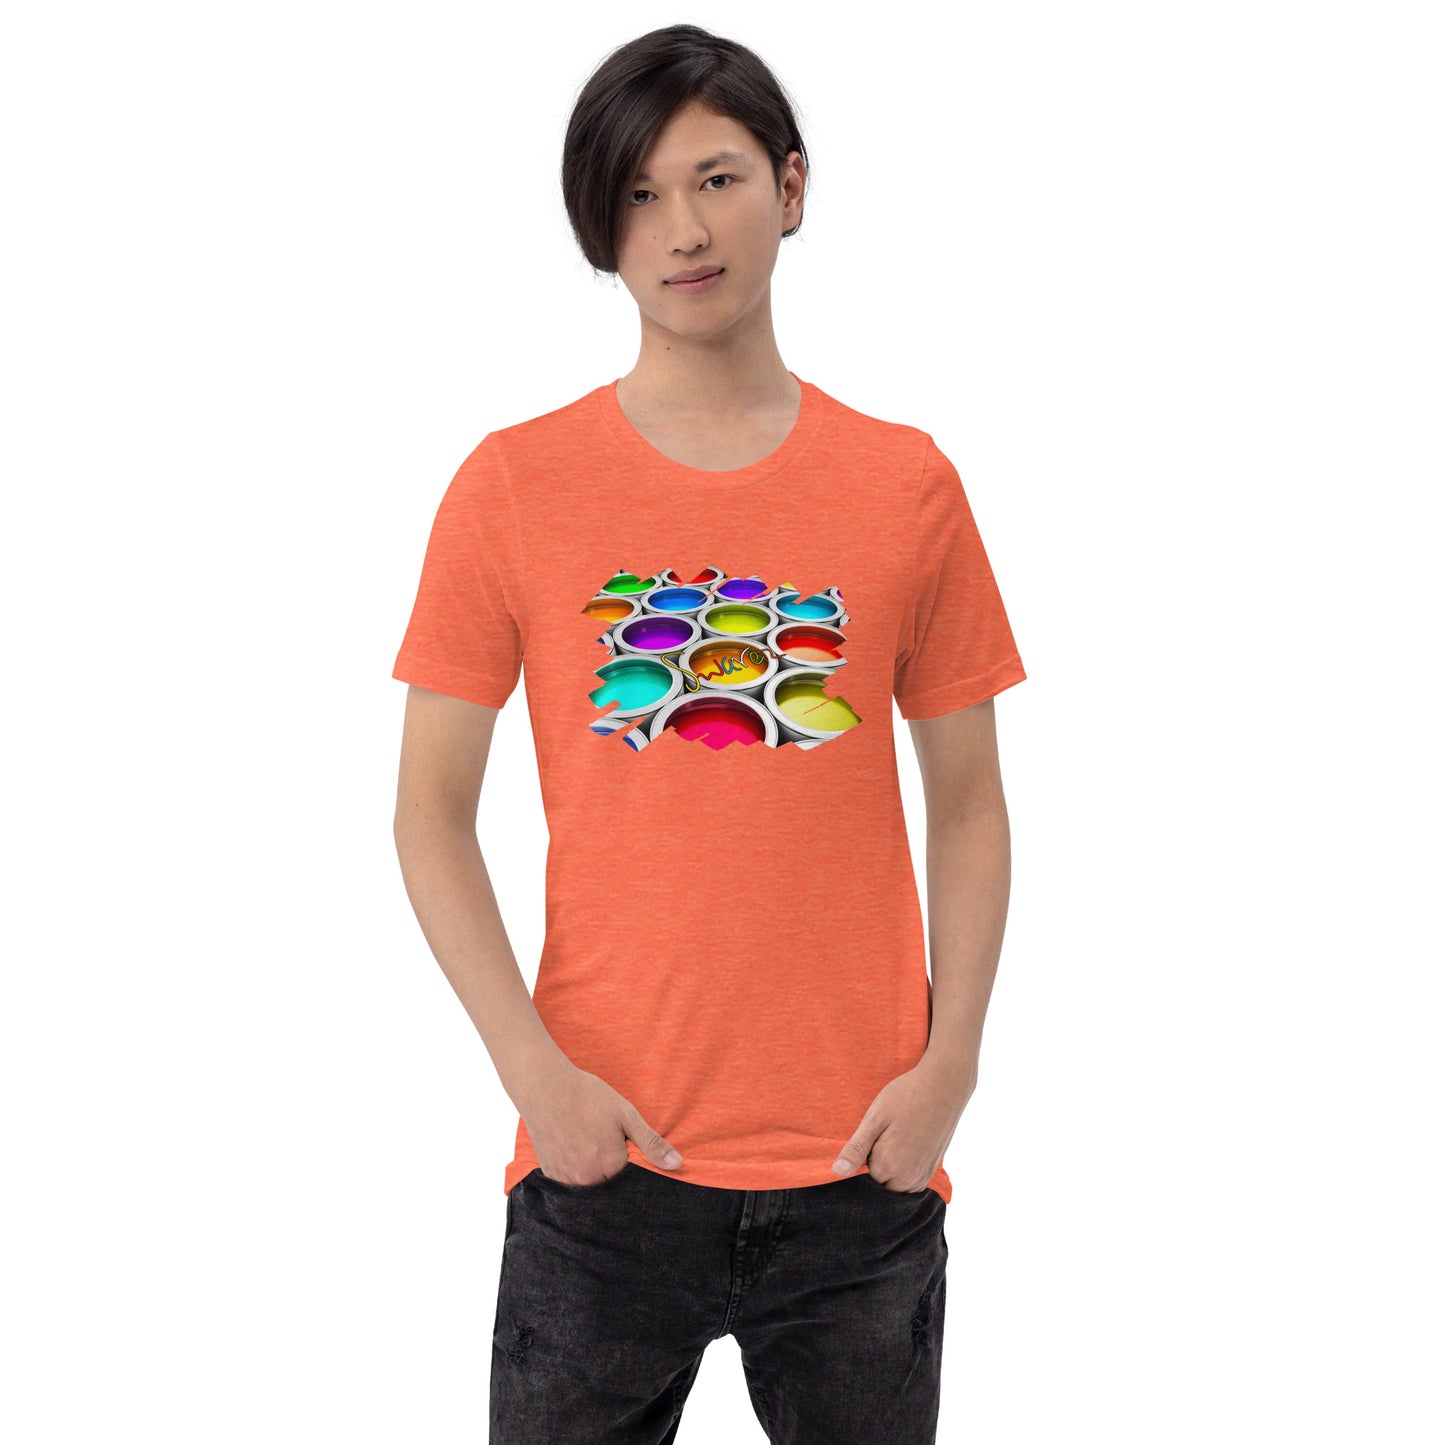 Unisex t-shirt - Colorful paint cans